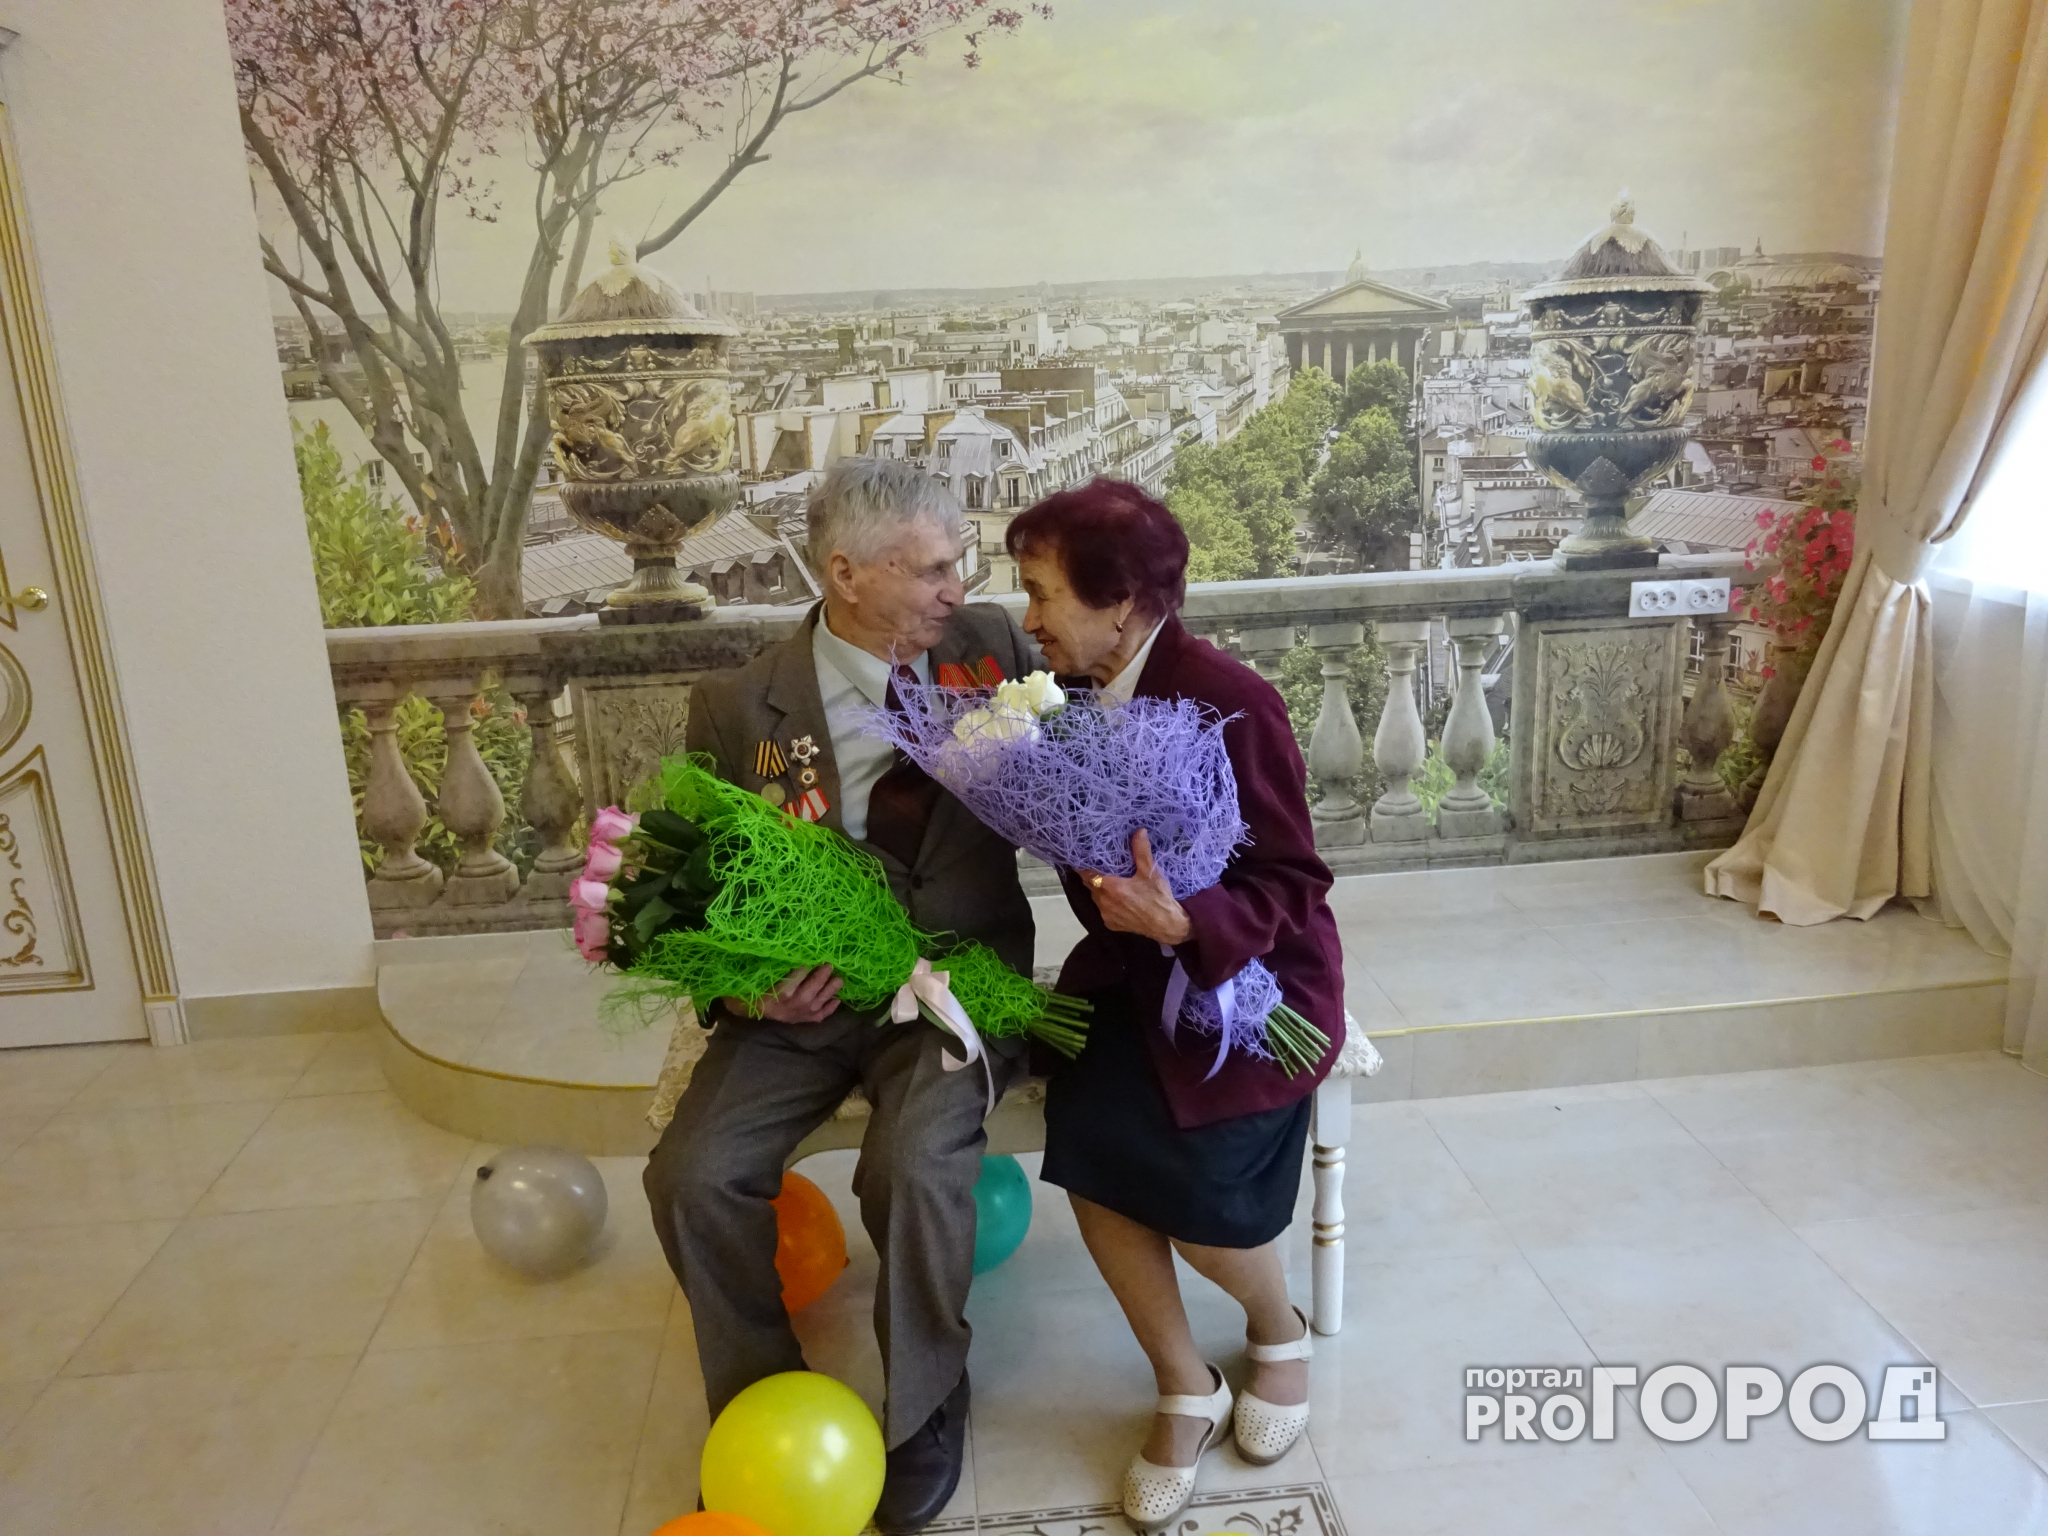 В Чебоксарах семейная пара ветеранов Великой Отечественной войны отметила 60-летие свадьбы